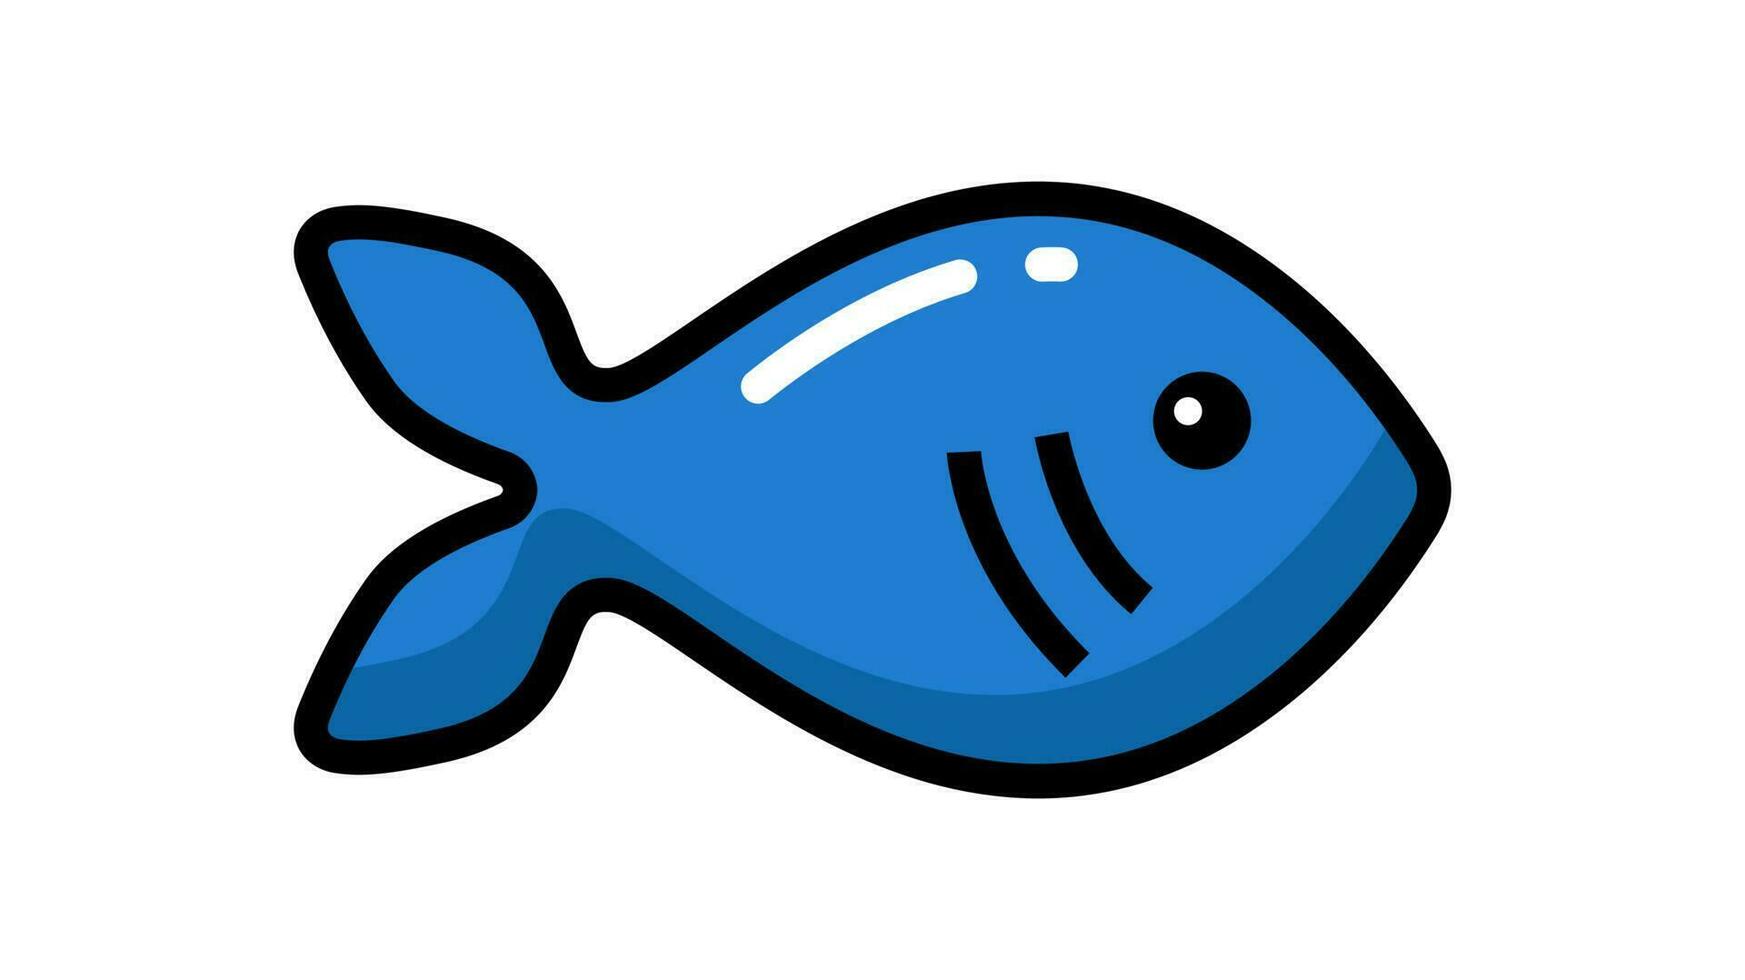 Vektor Symbol Illustration. bunt Fisch. isoliert auf Weiß Hintergrund.